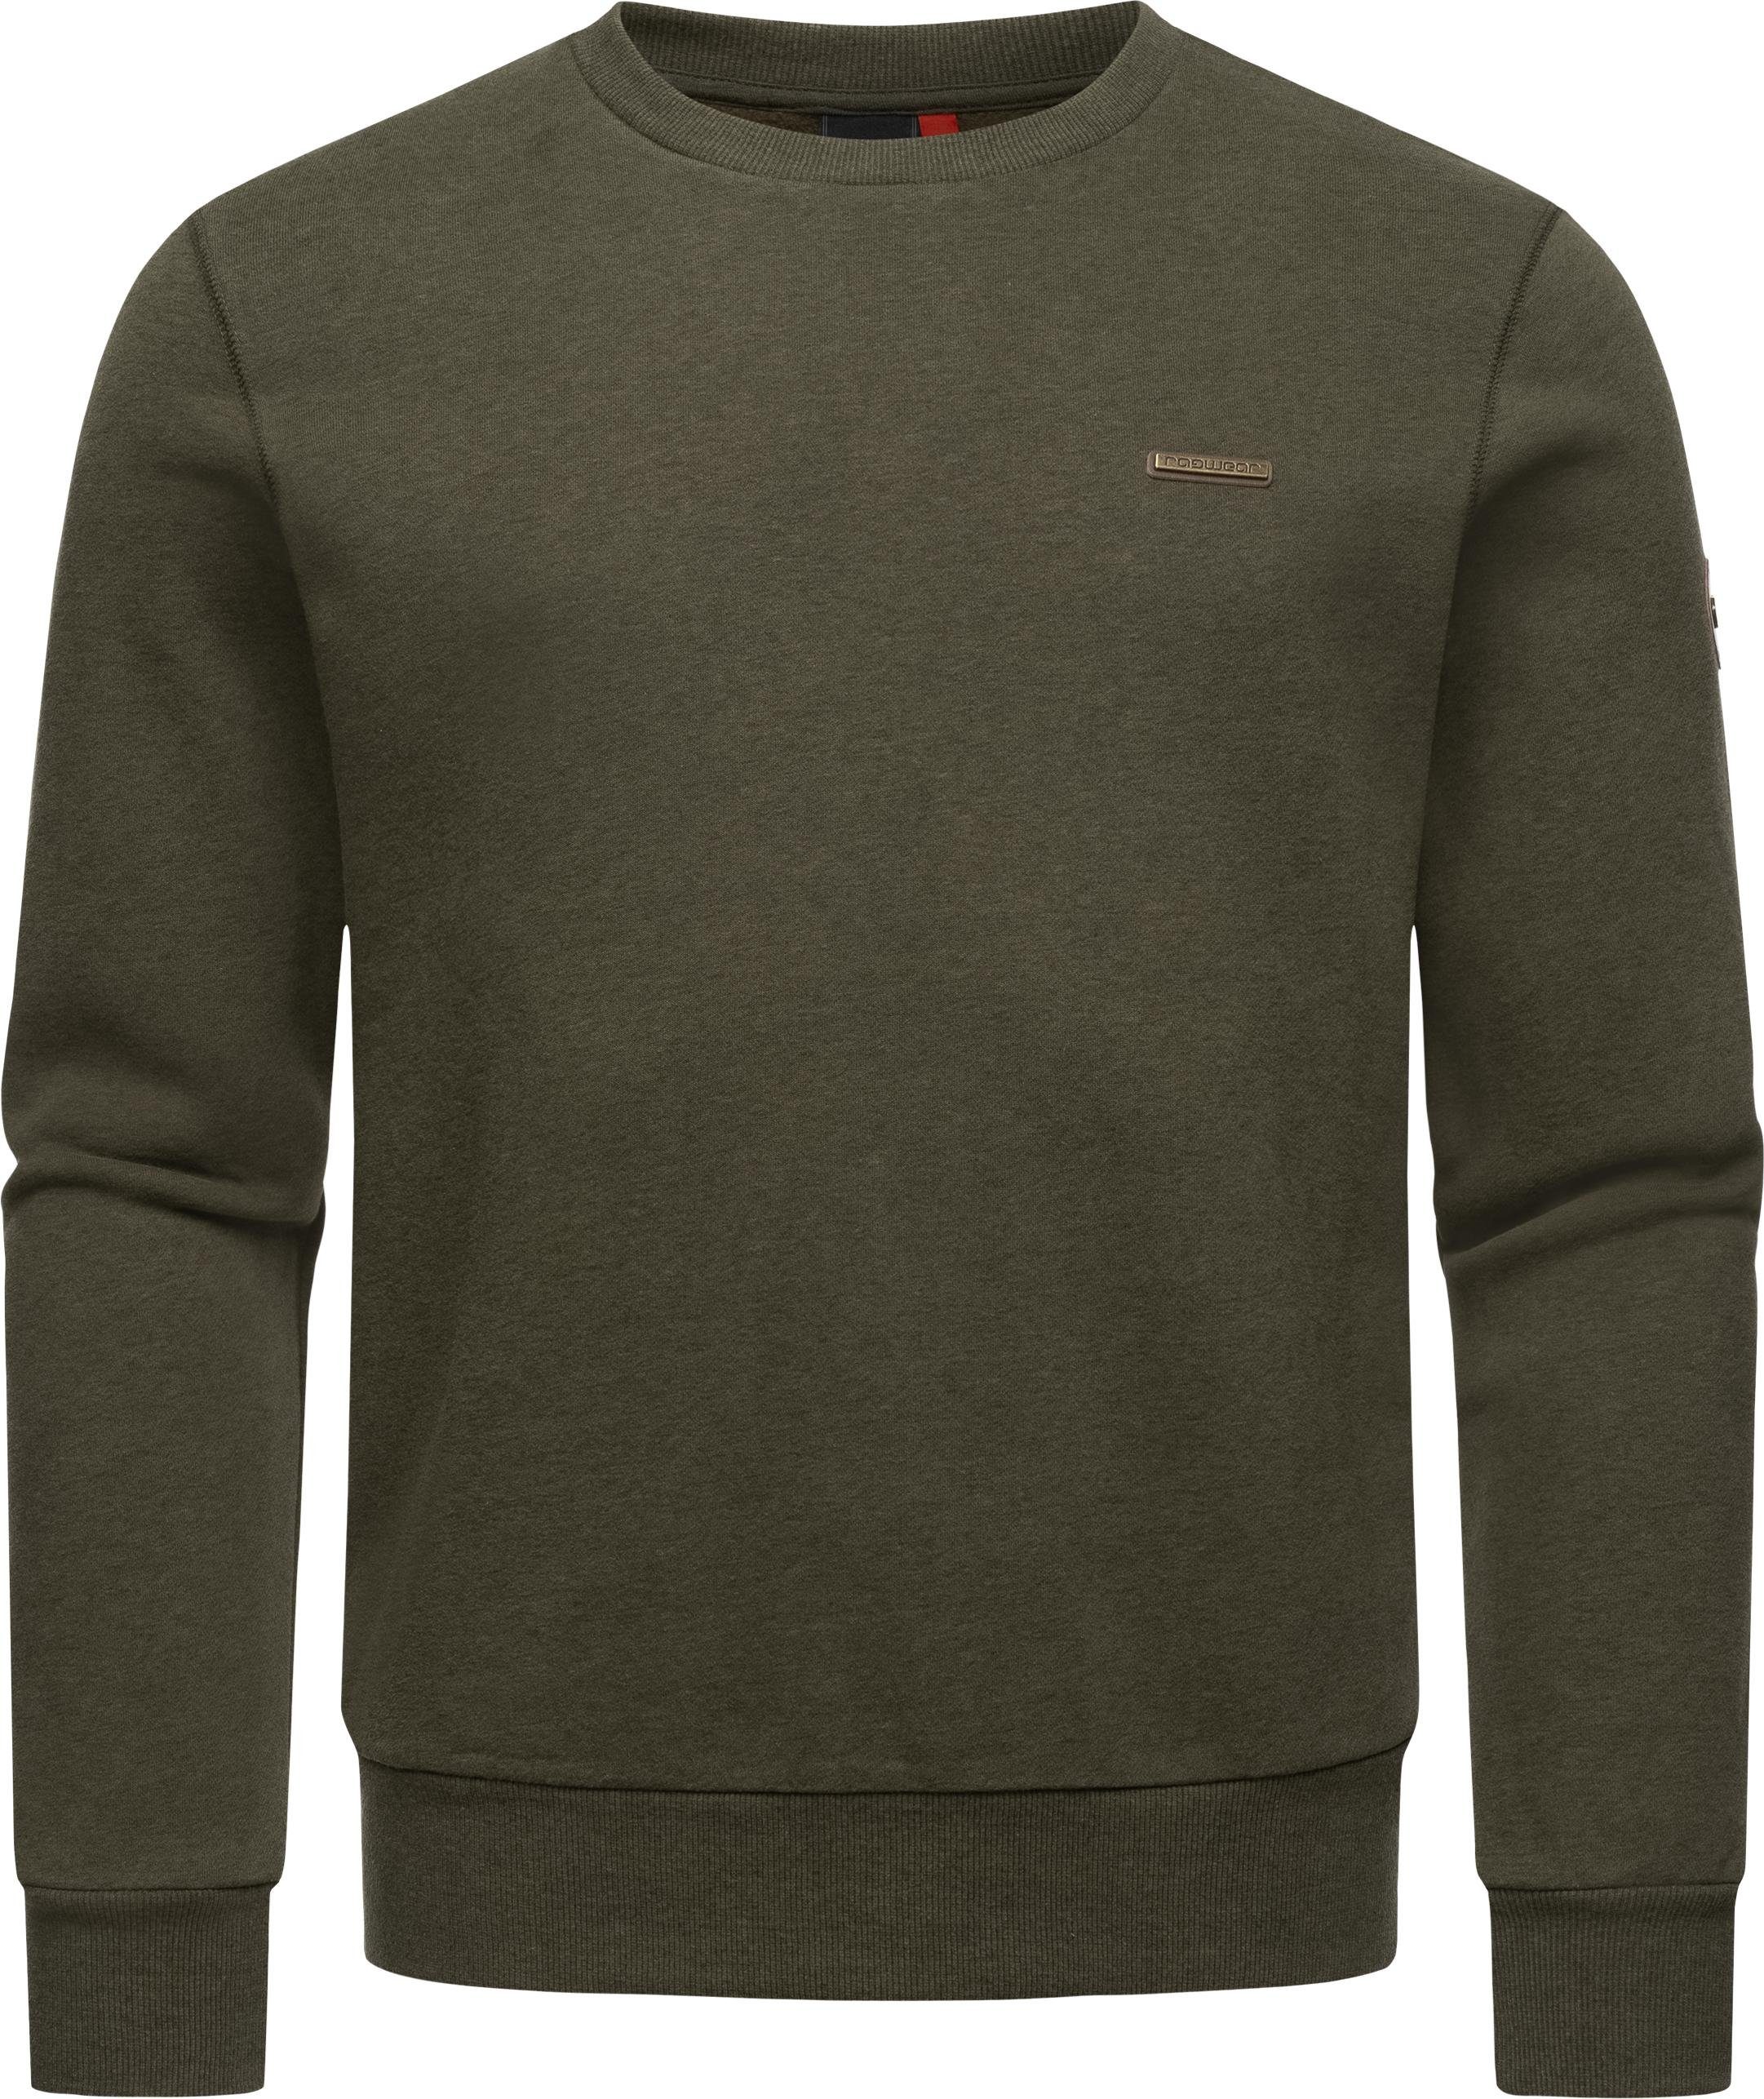 Ragwear Sweater Indie Cooler Basic Herren Pullover olivgrün